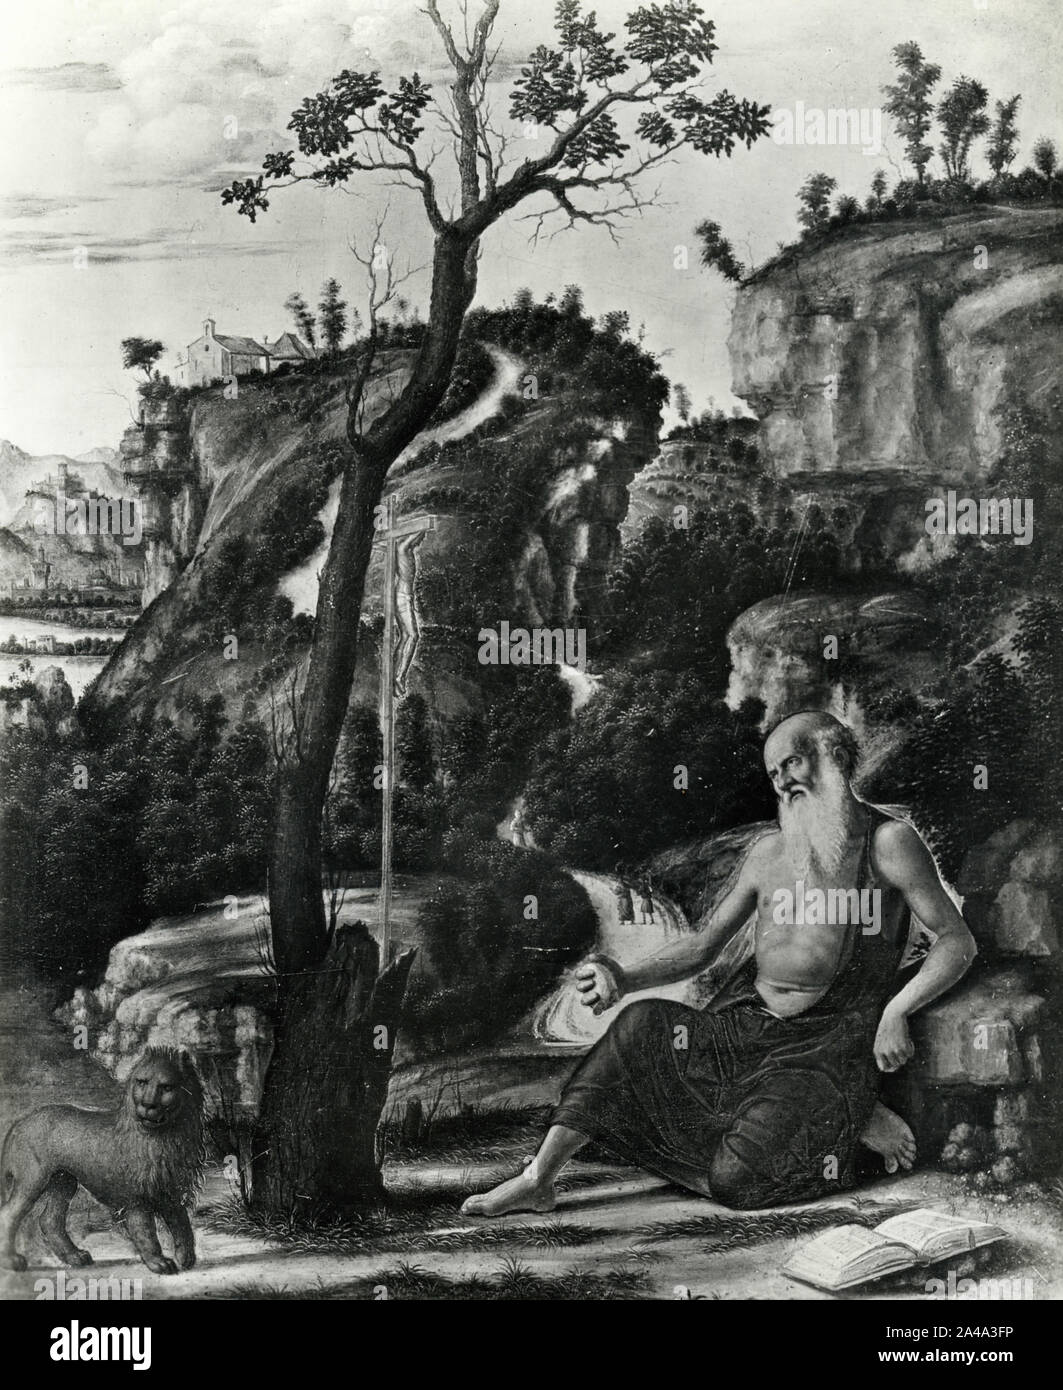 Saint Jerome, painting by Italian artist Giovanni Battista Cima da Conegliano, 1960s Stock Photo